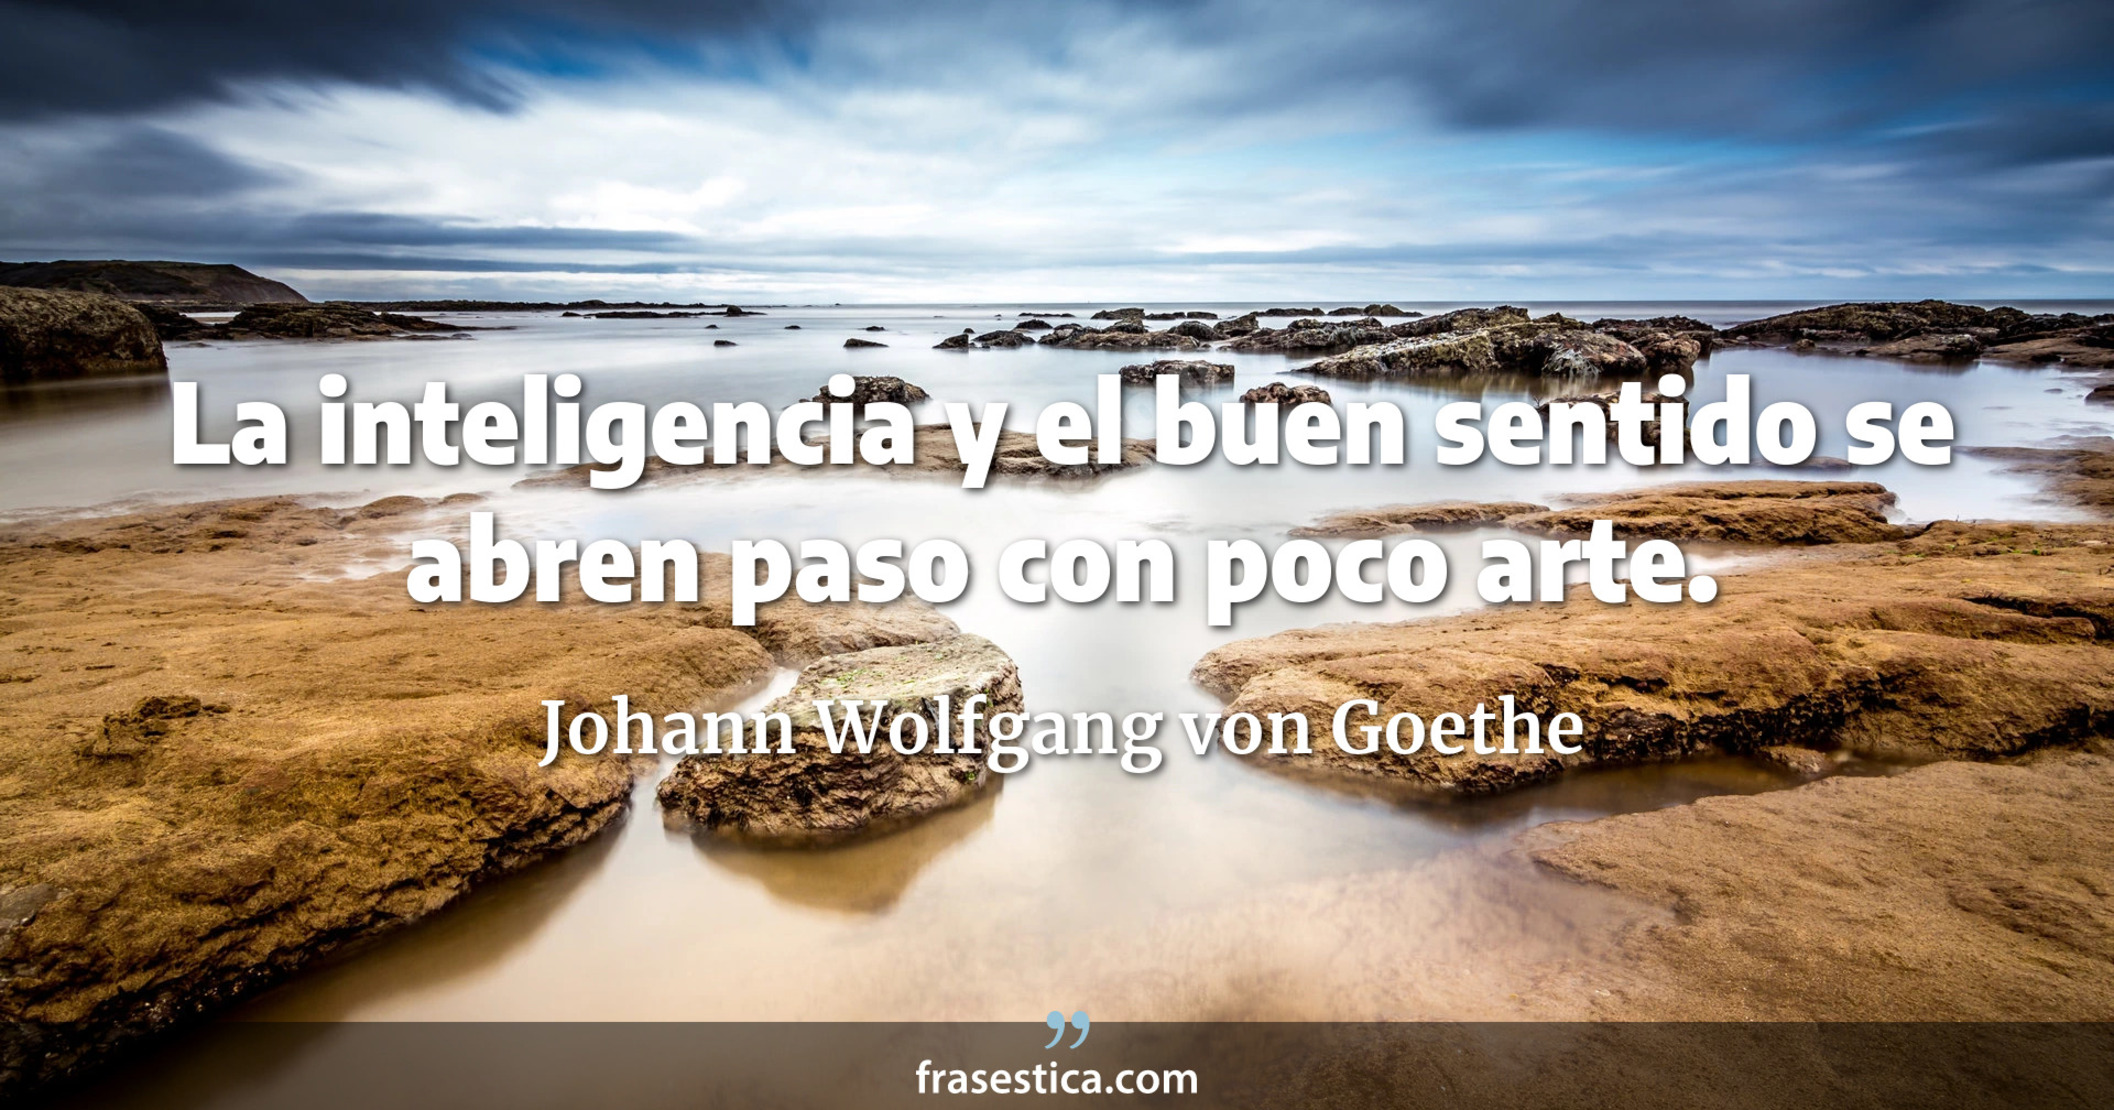 La inteligencia y el buen sentido se abren paso con poco arte. - Johann Wolfgang von Goethe